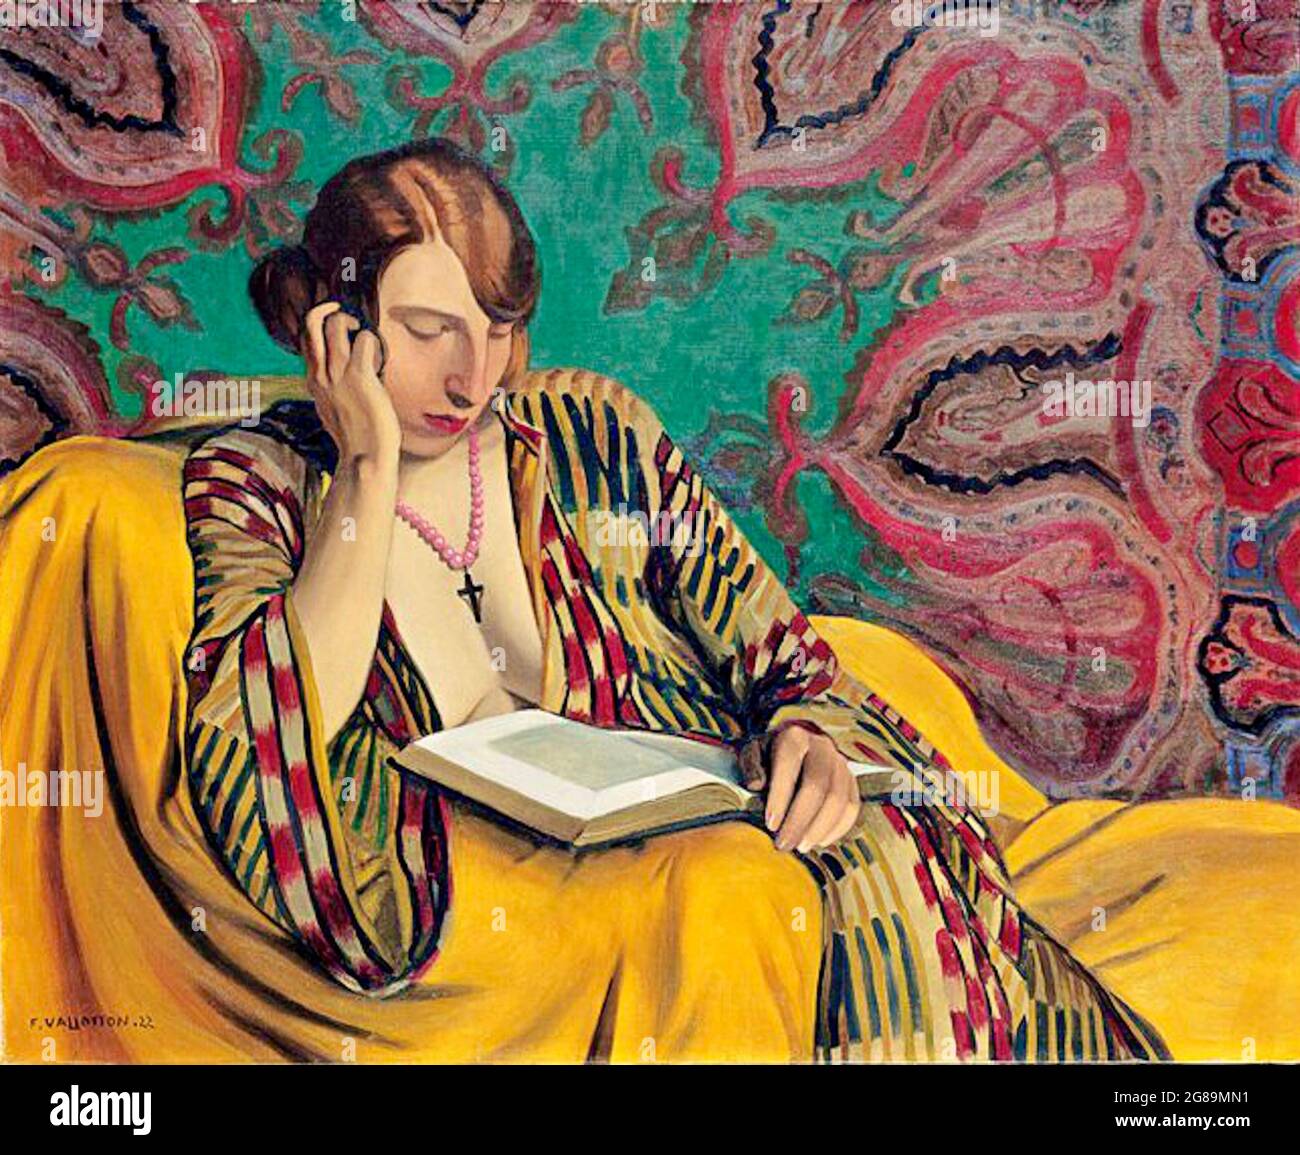 Félix Vollotton opera intitolata la Liseuse o Reading Light. Una donna seduta legge un libro. La carta da parati in stile mandala ornata adorna le pareti. Foto Stock